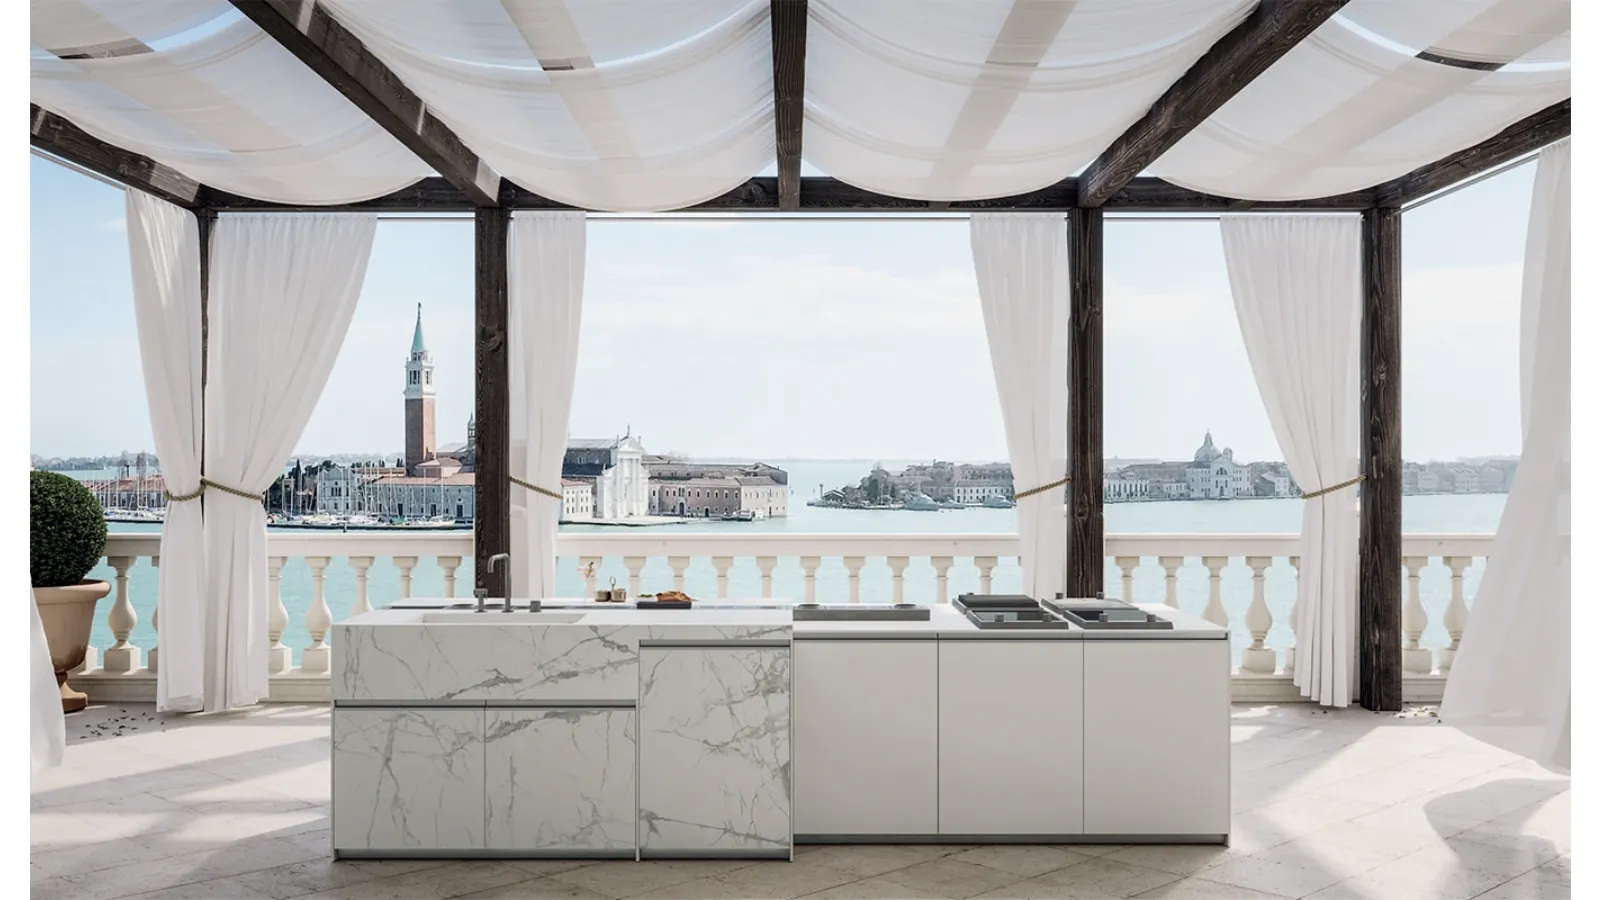 Cucina Design con isola Venezia 2 di Zampieri Cucine